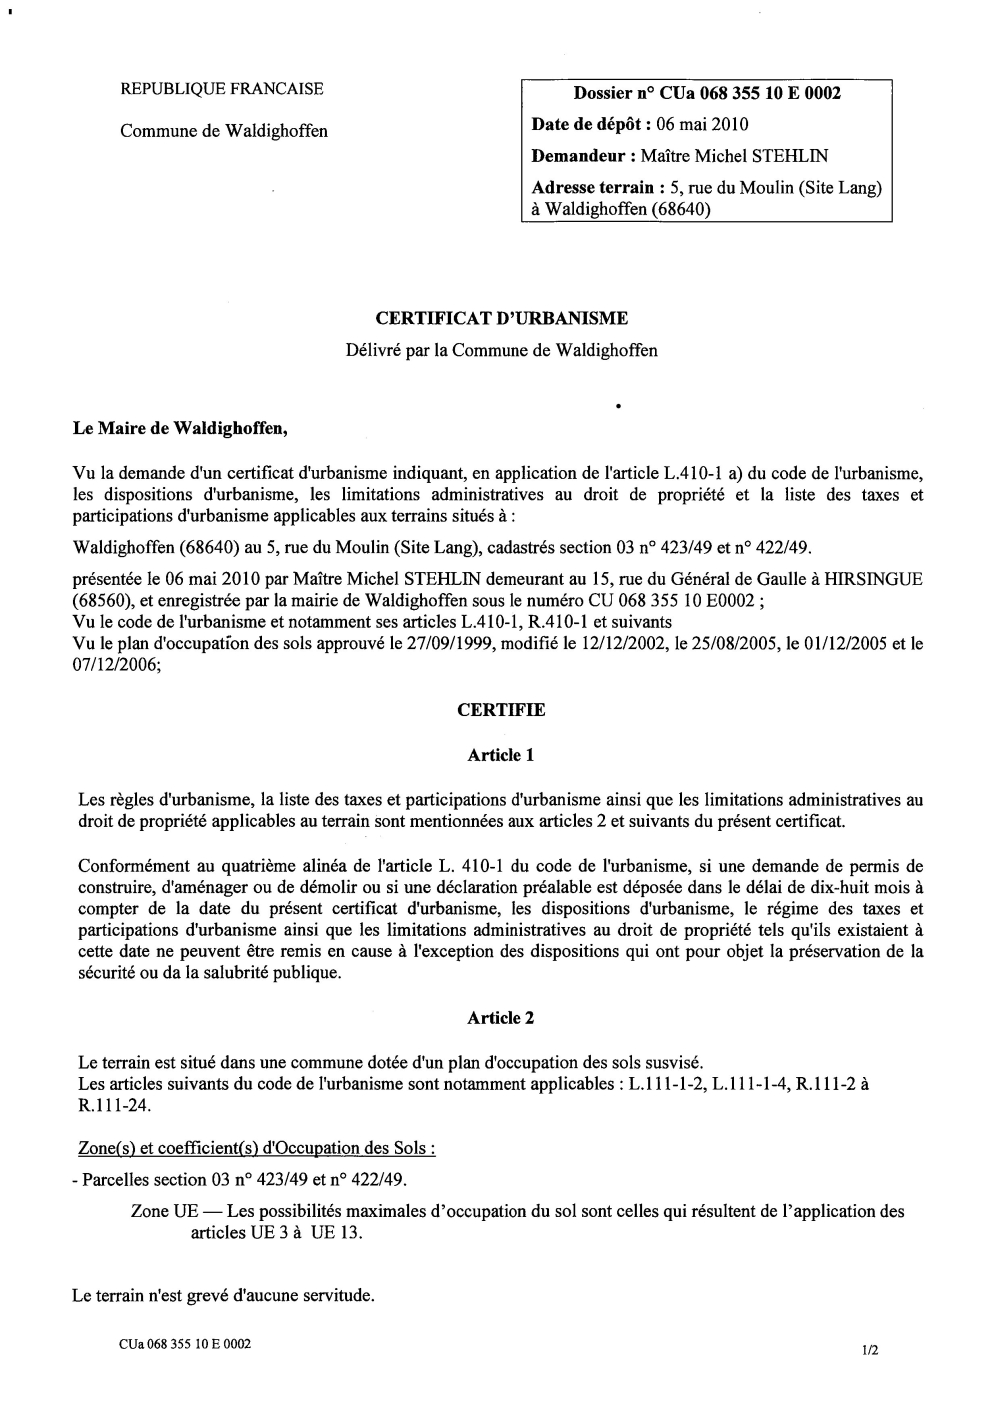 Certificat d'urbanisme CU10E0002 Me STEHLIN Michel p1